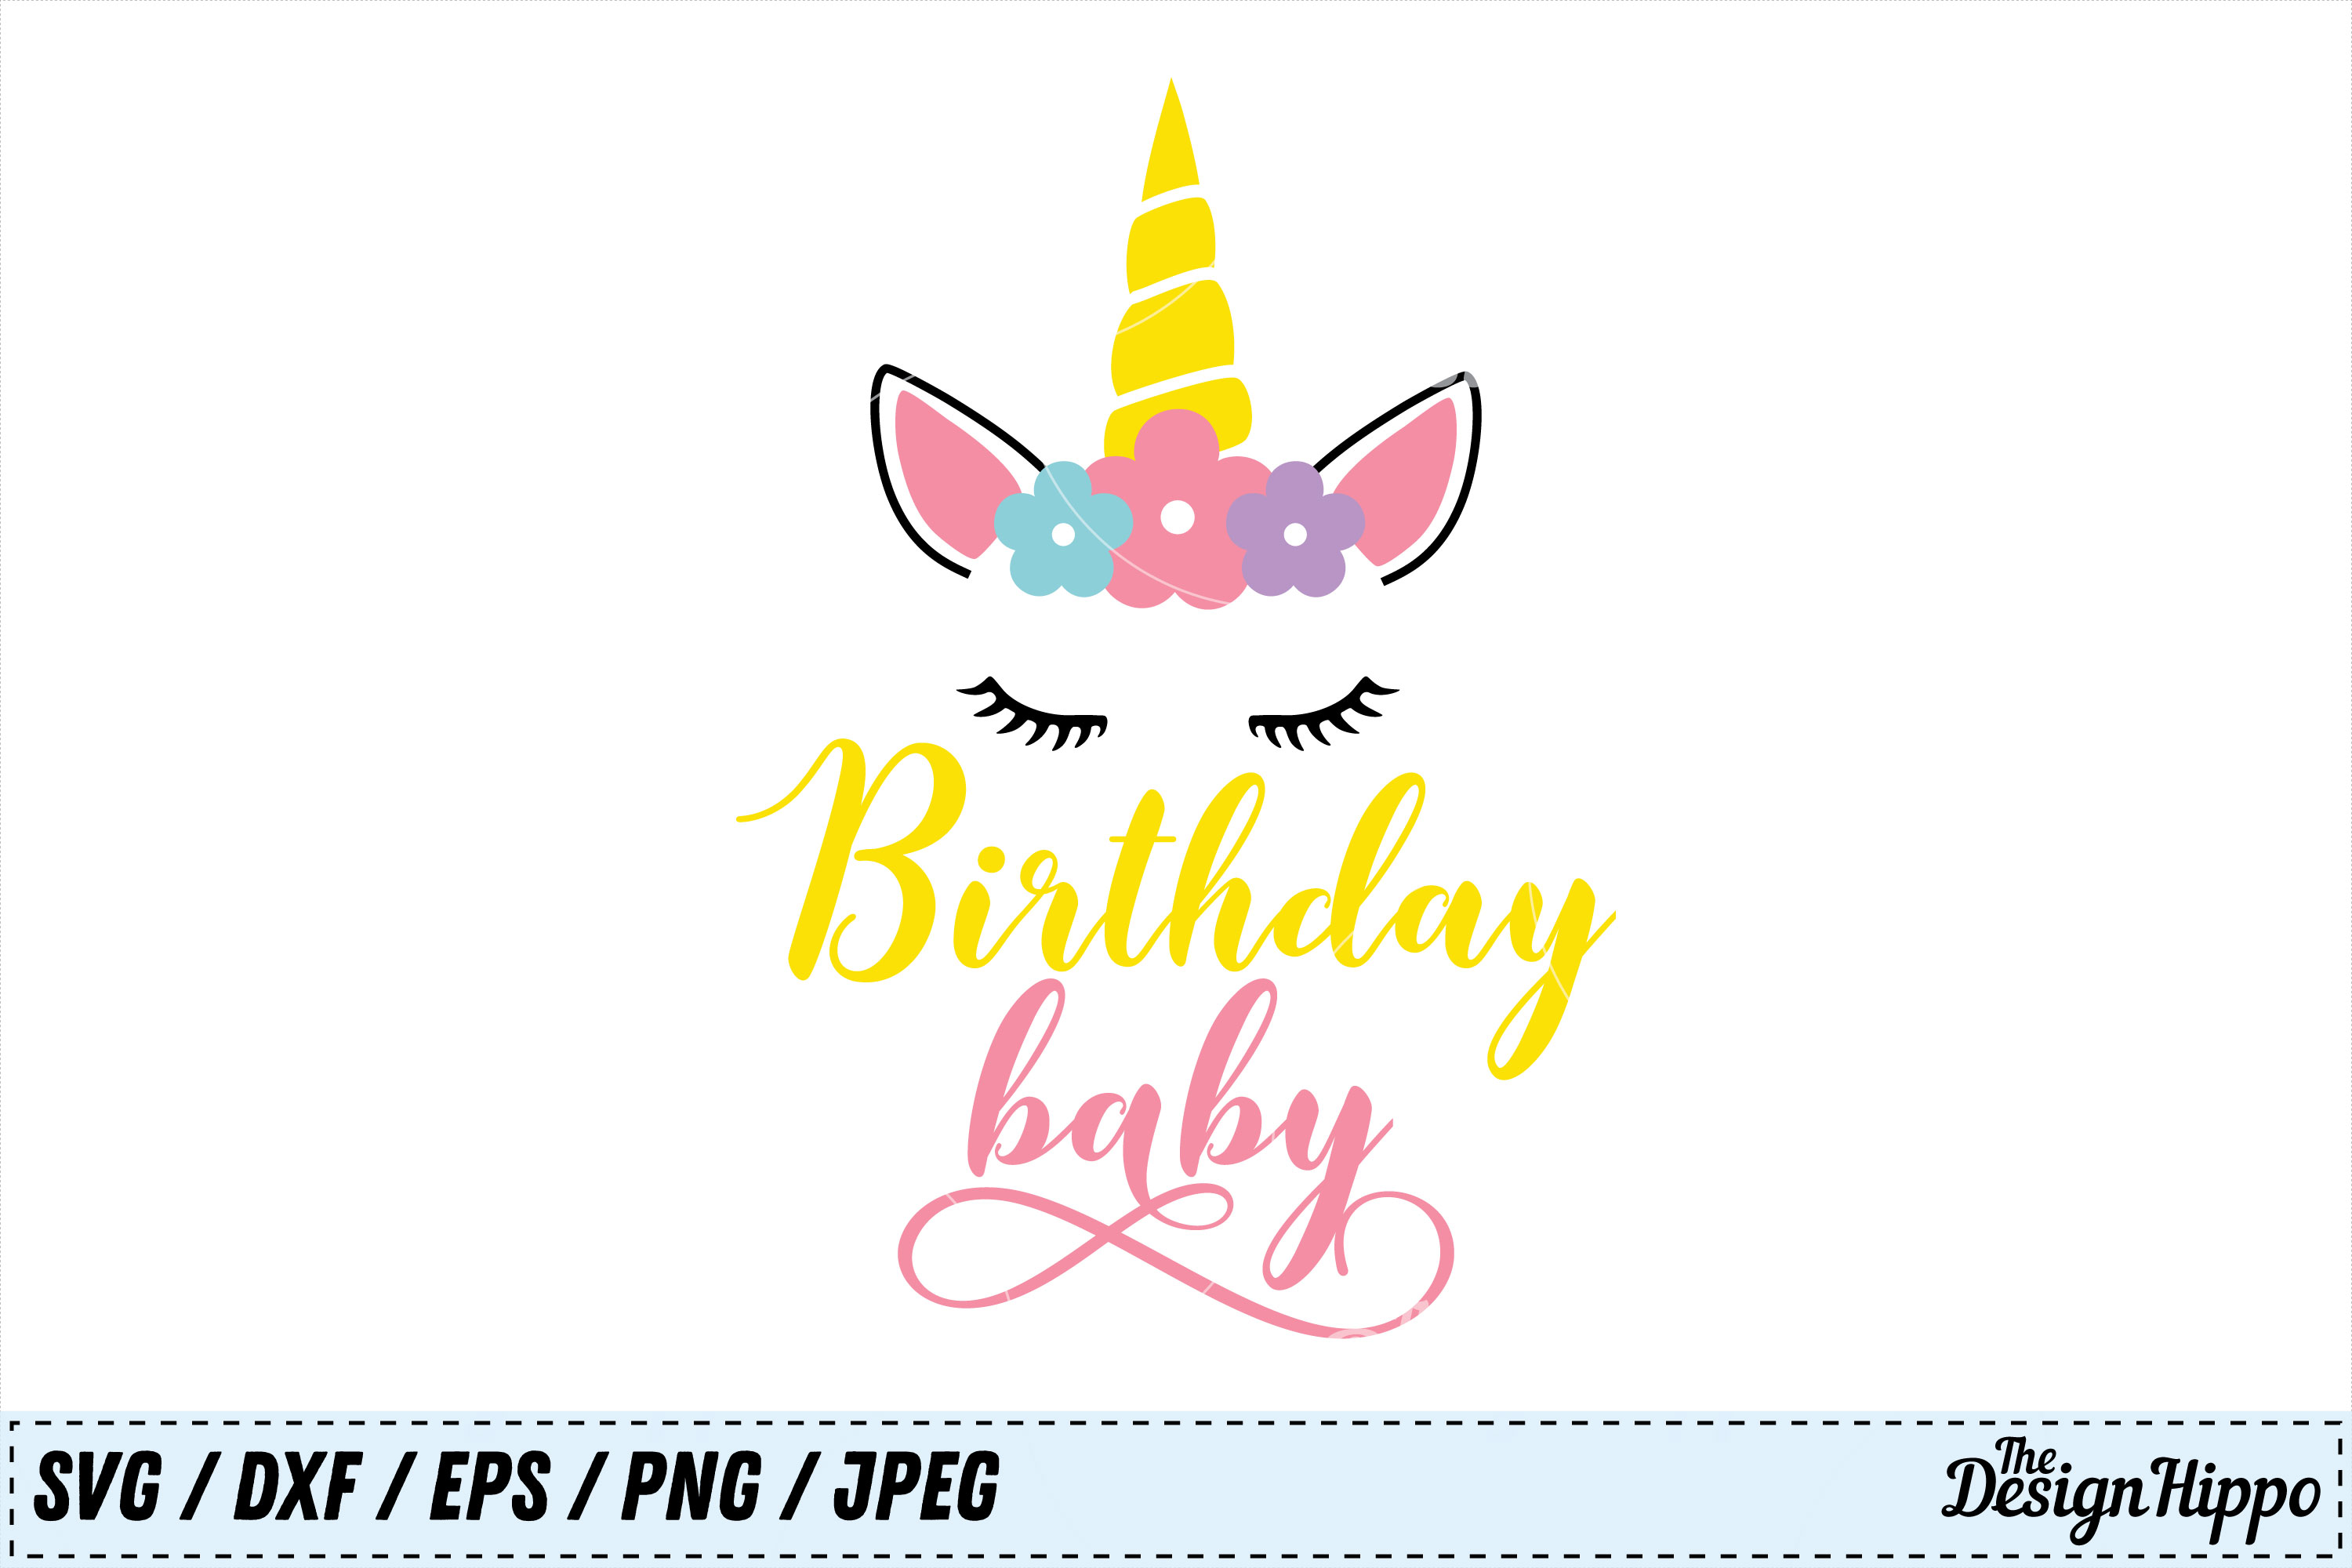 Download Birthday Baby SVG, Unicorn SVG, Birthday SVG, Baby SVG ...